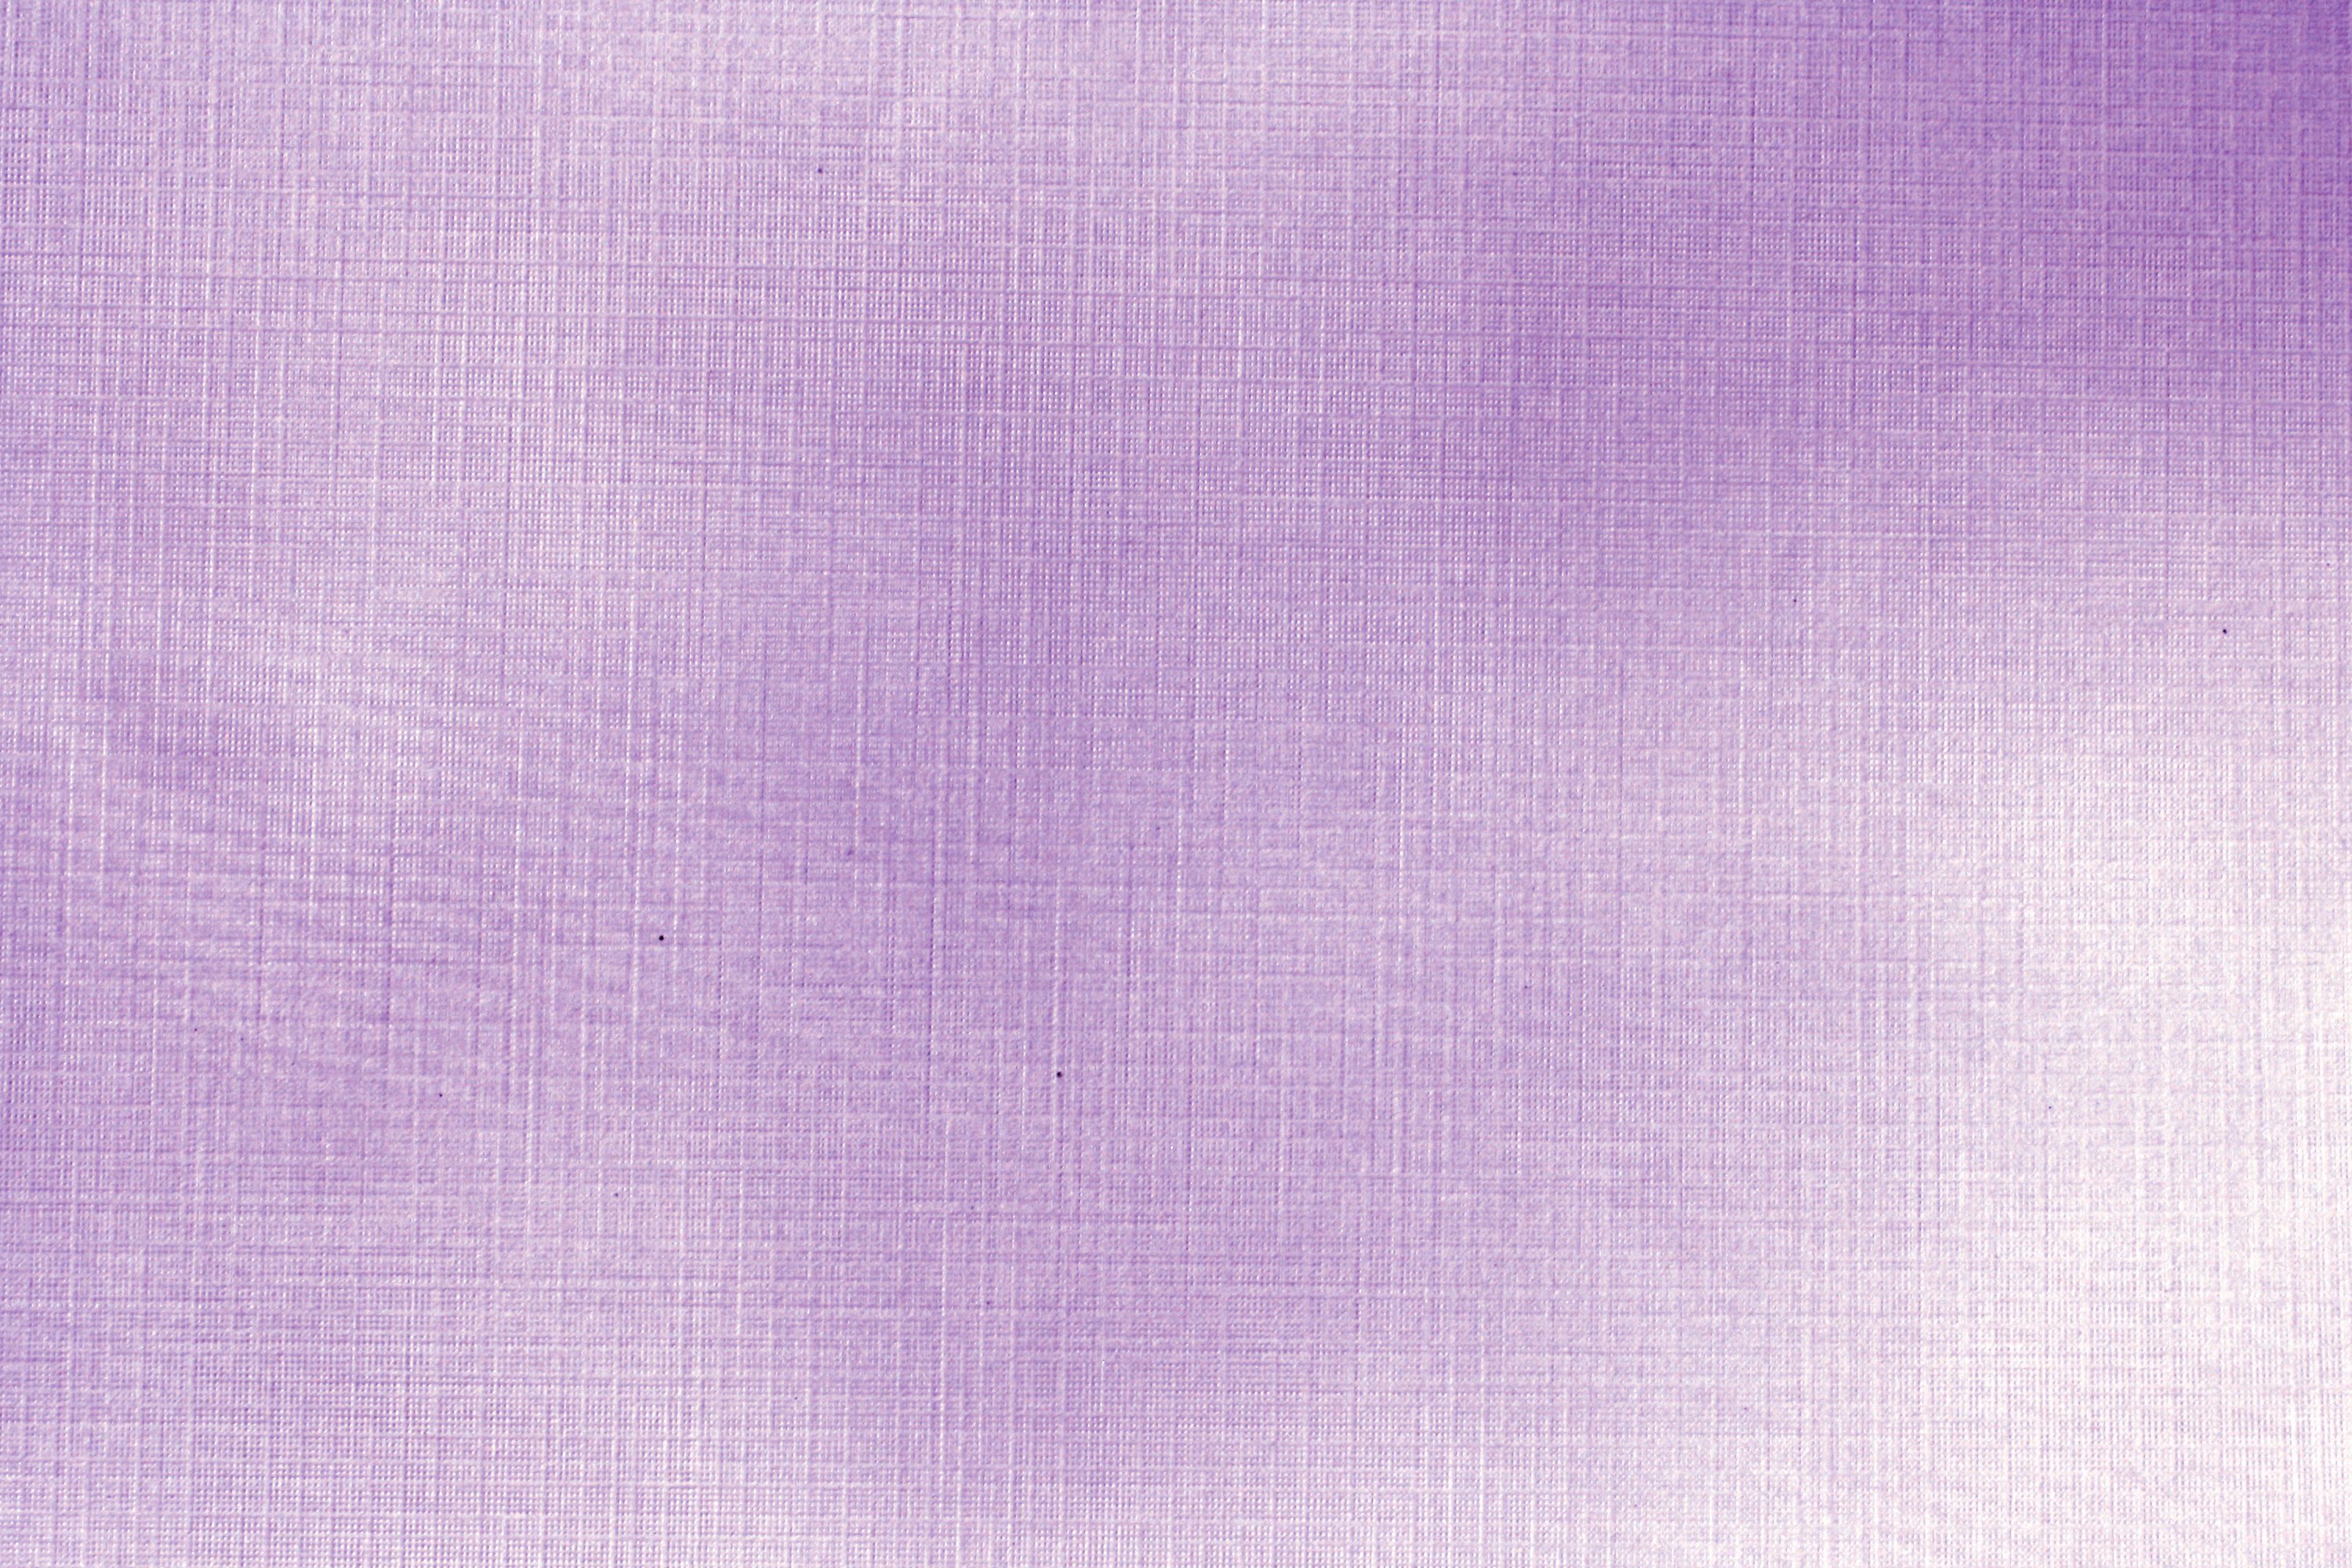 Purple Linen Paper Texture Picture Free Photograph Photos Public